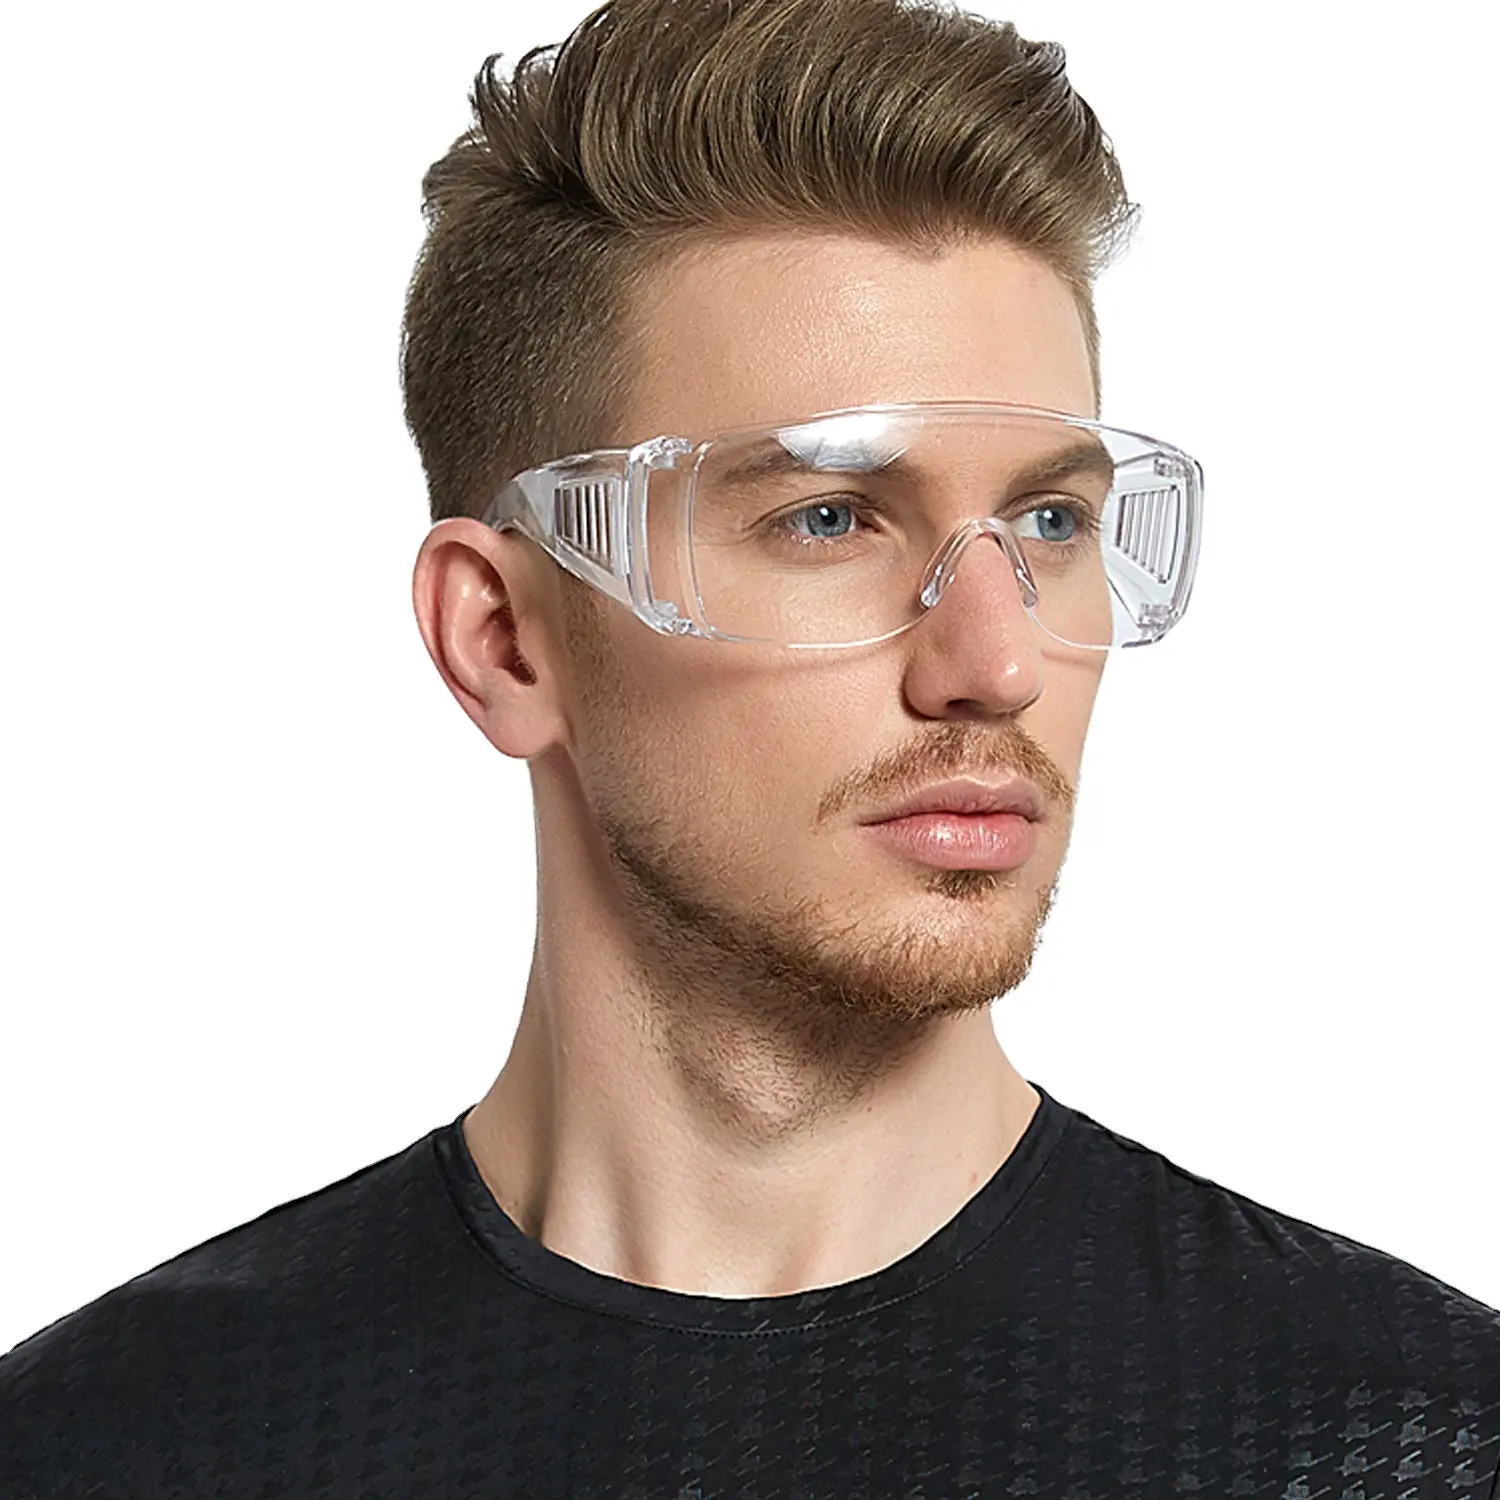 UV400 Z87 En166 occhiali di sicurezza di sicurezza Google occhiali di protezione per gli occhi occhiali diversi colori occhiali di sicurezza